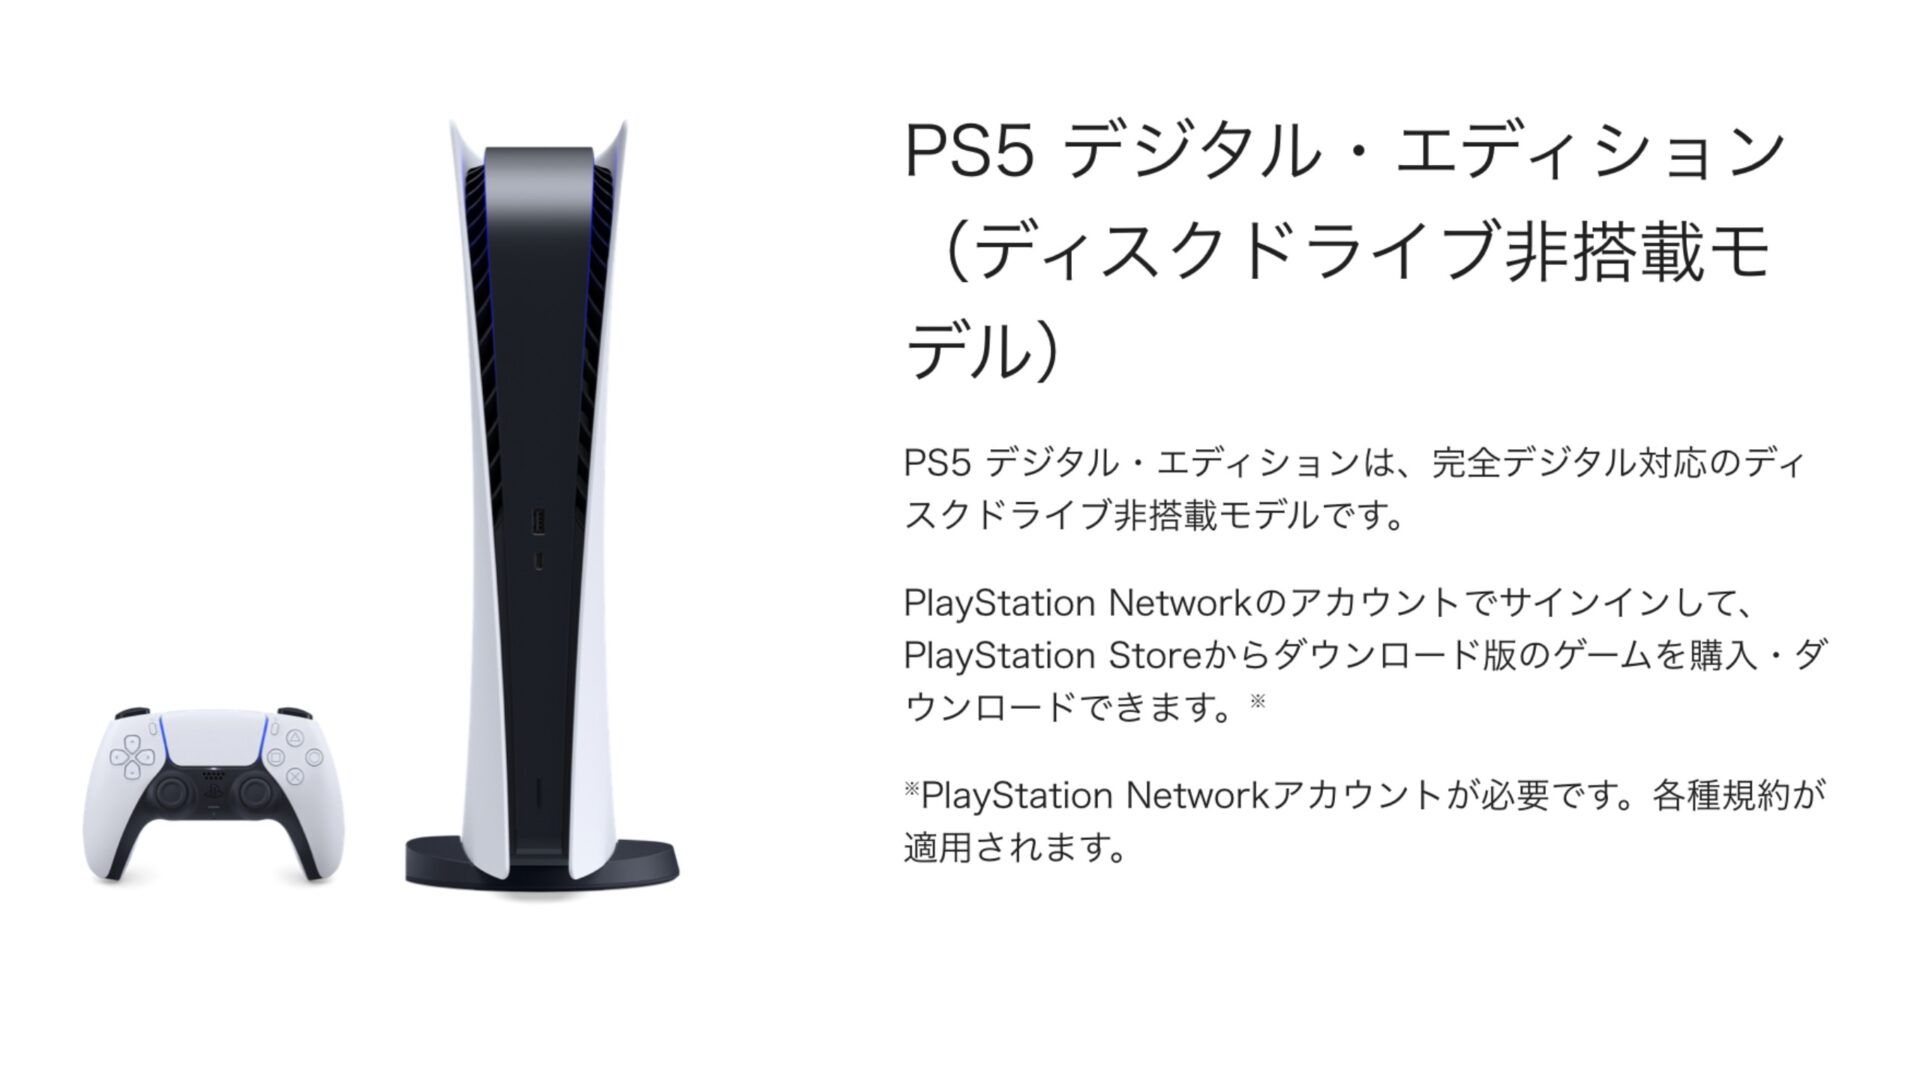 PS5 デジタル・エディション」の定価は¥49,478、容量は825GB(667GB 